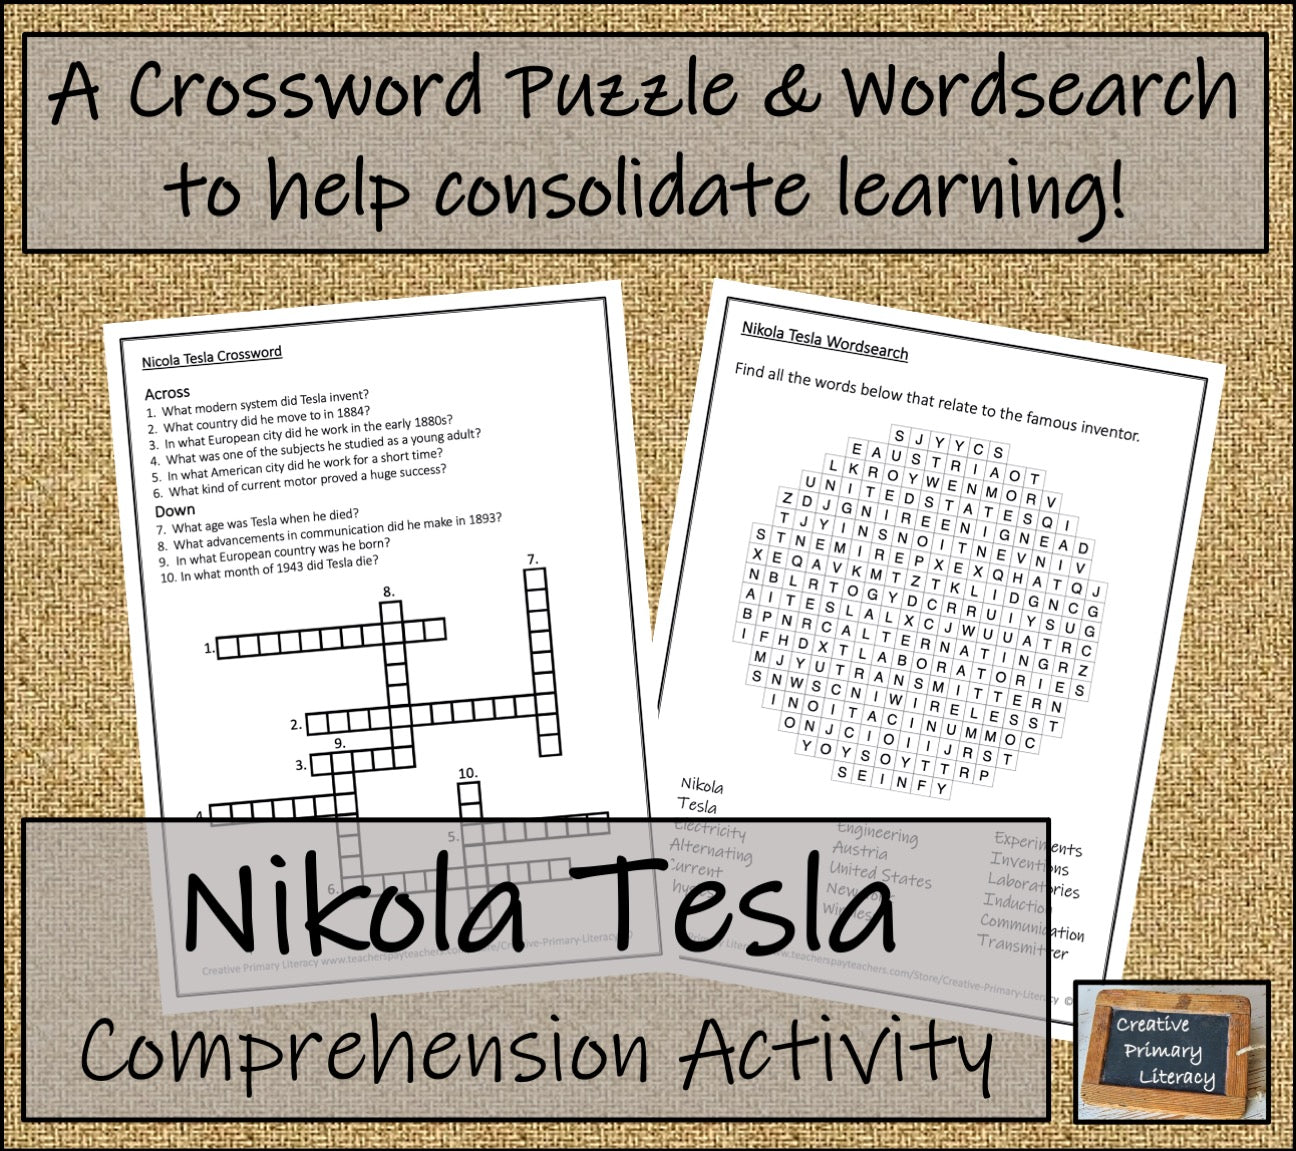 Nikola Tesla Close Reading Comprehension Activity | 3rd Grade & 4th Grade